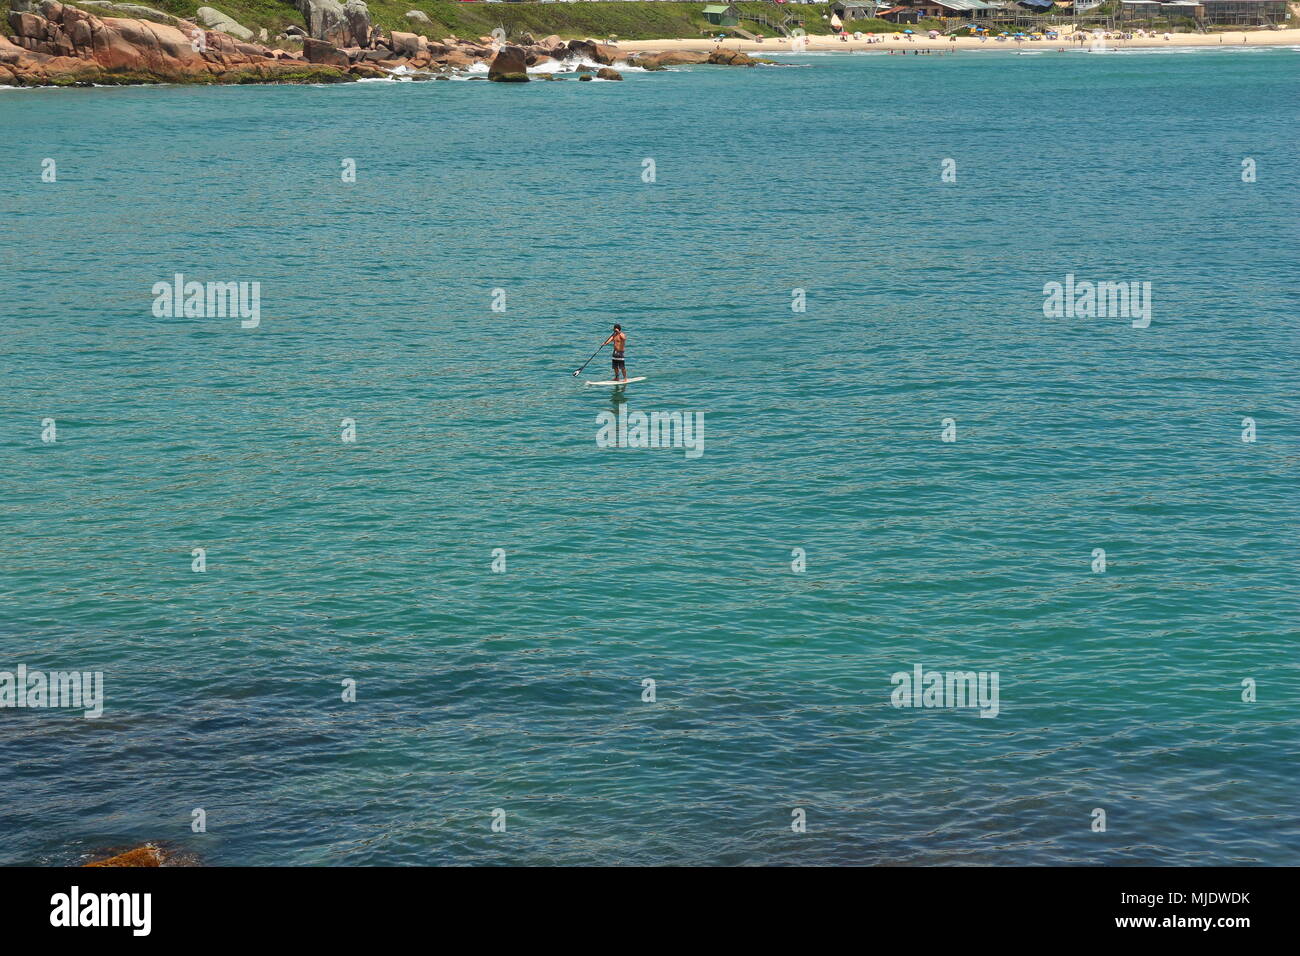 Man Stand up Paddeln im Meer. Praia do Rosa, Brasilien Stockfoto